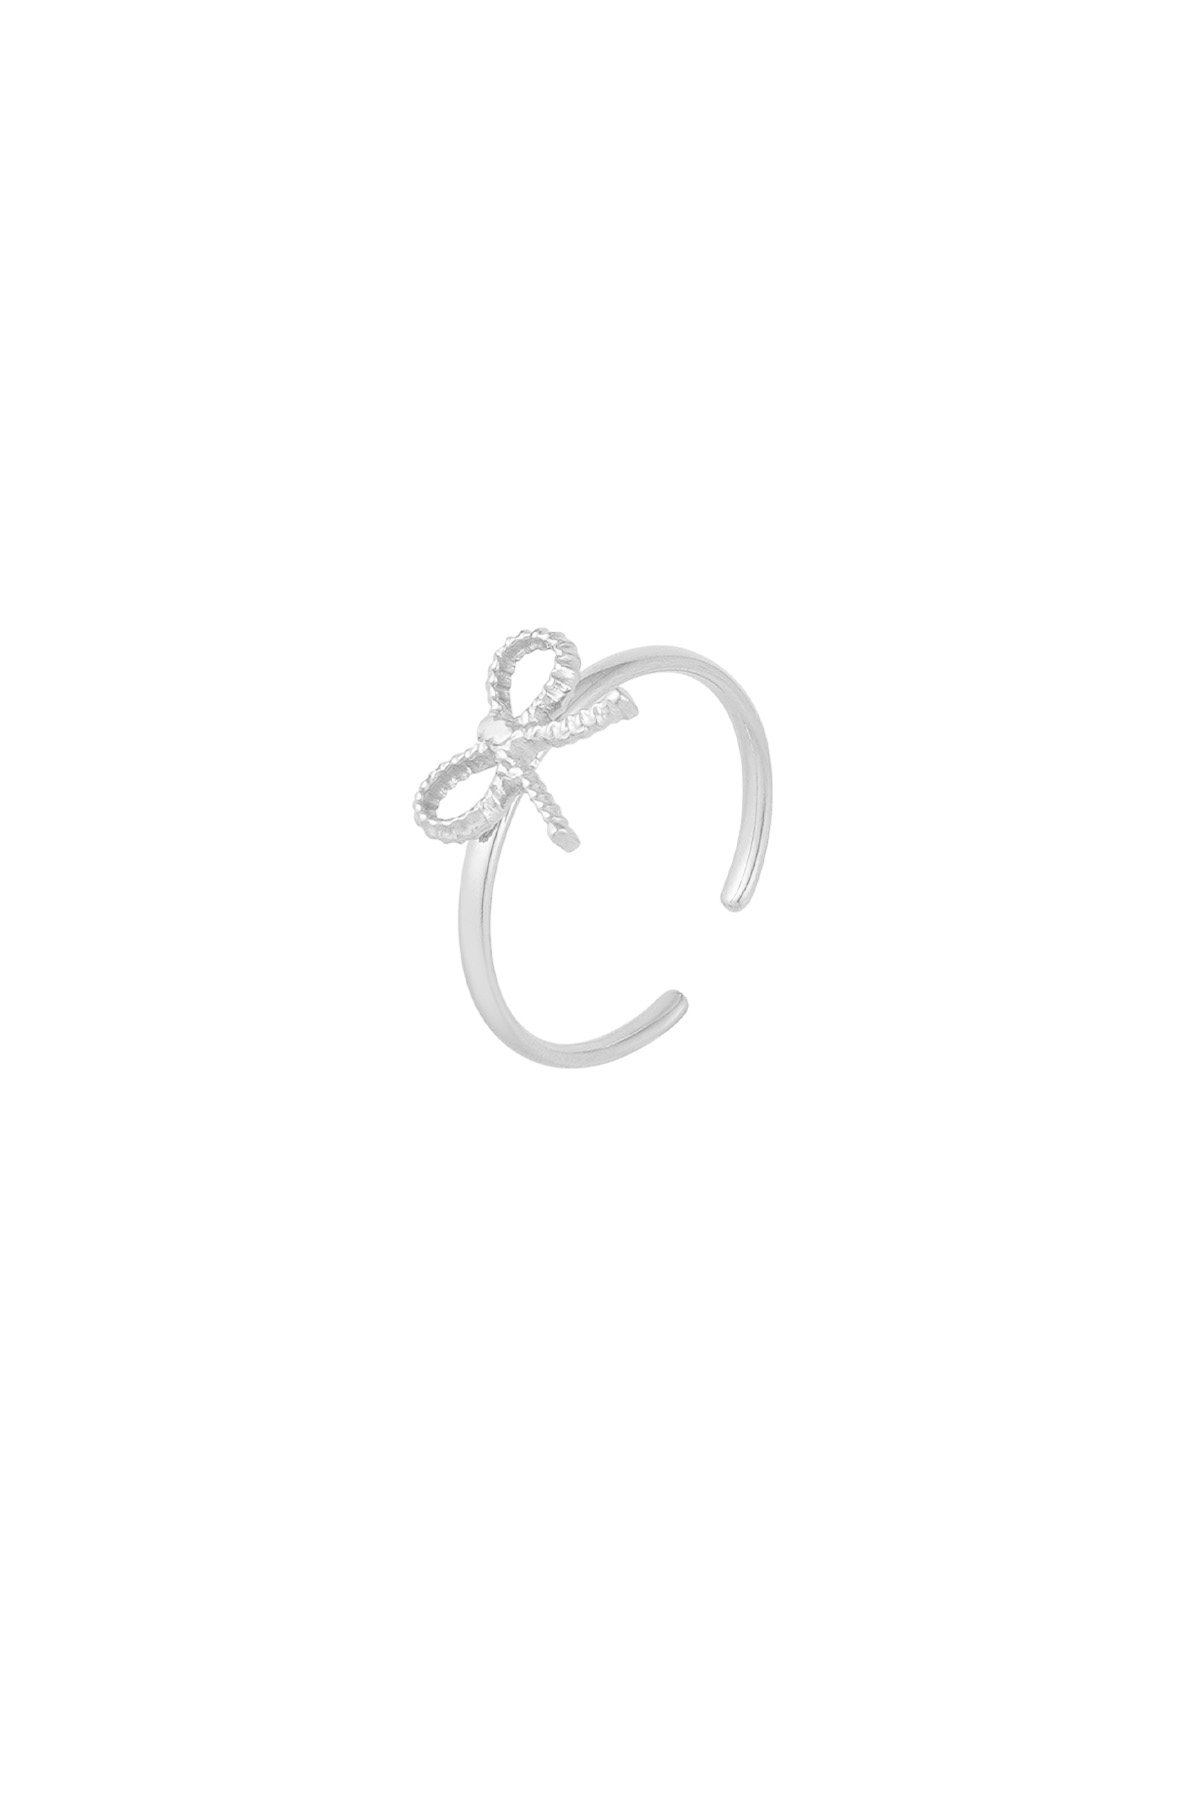 Ring Schleife Basic - silber h5 